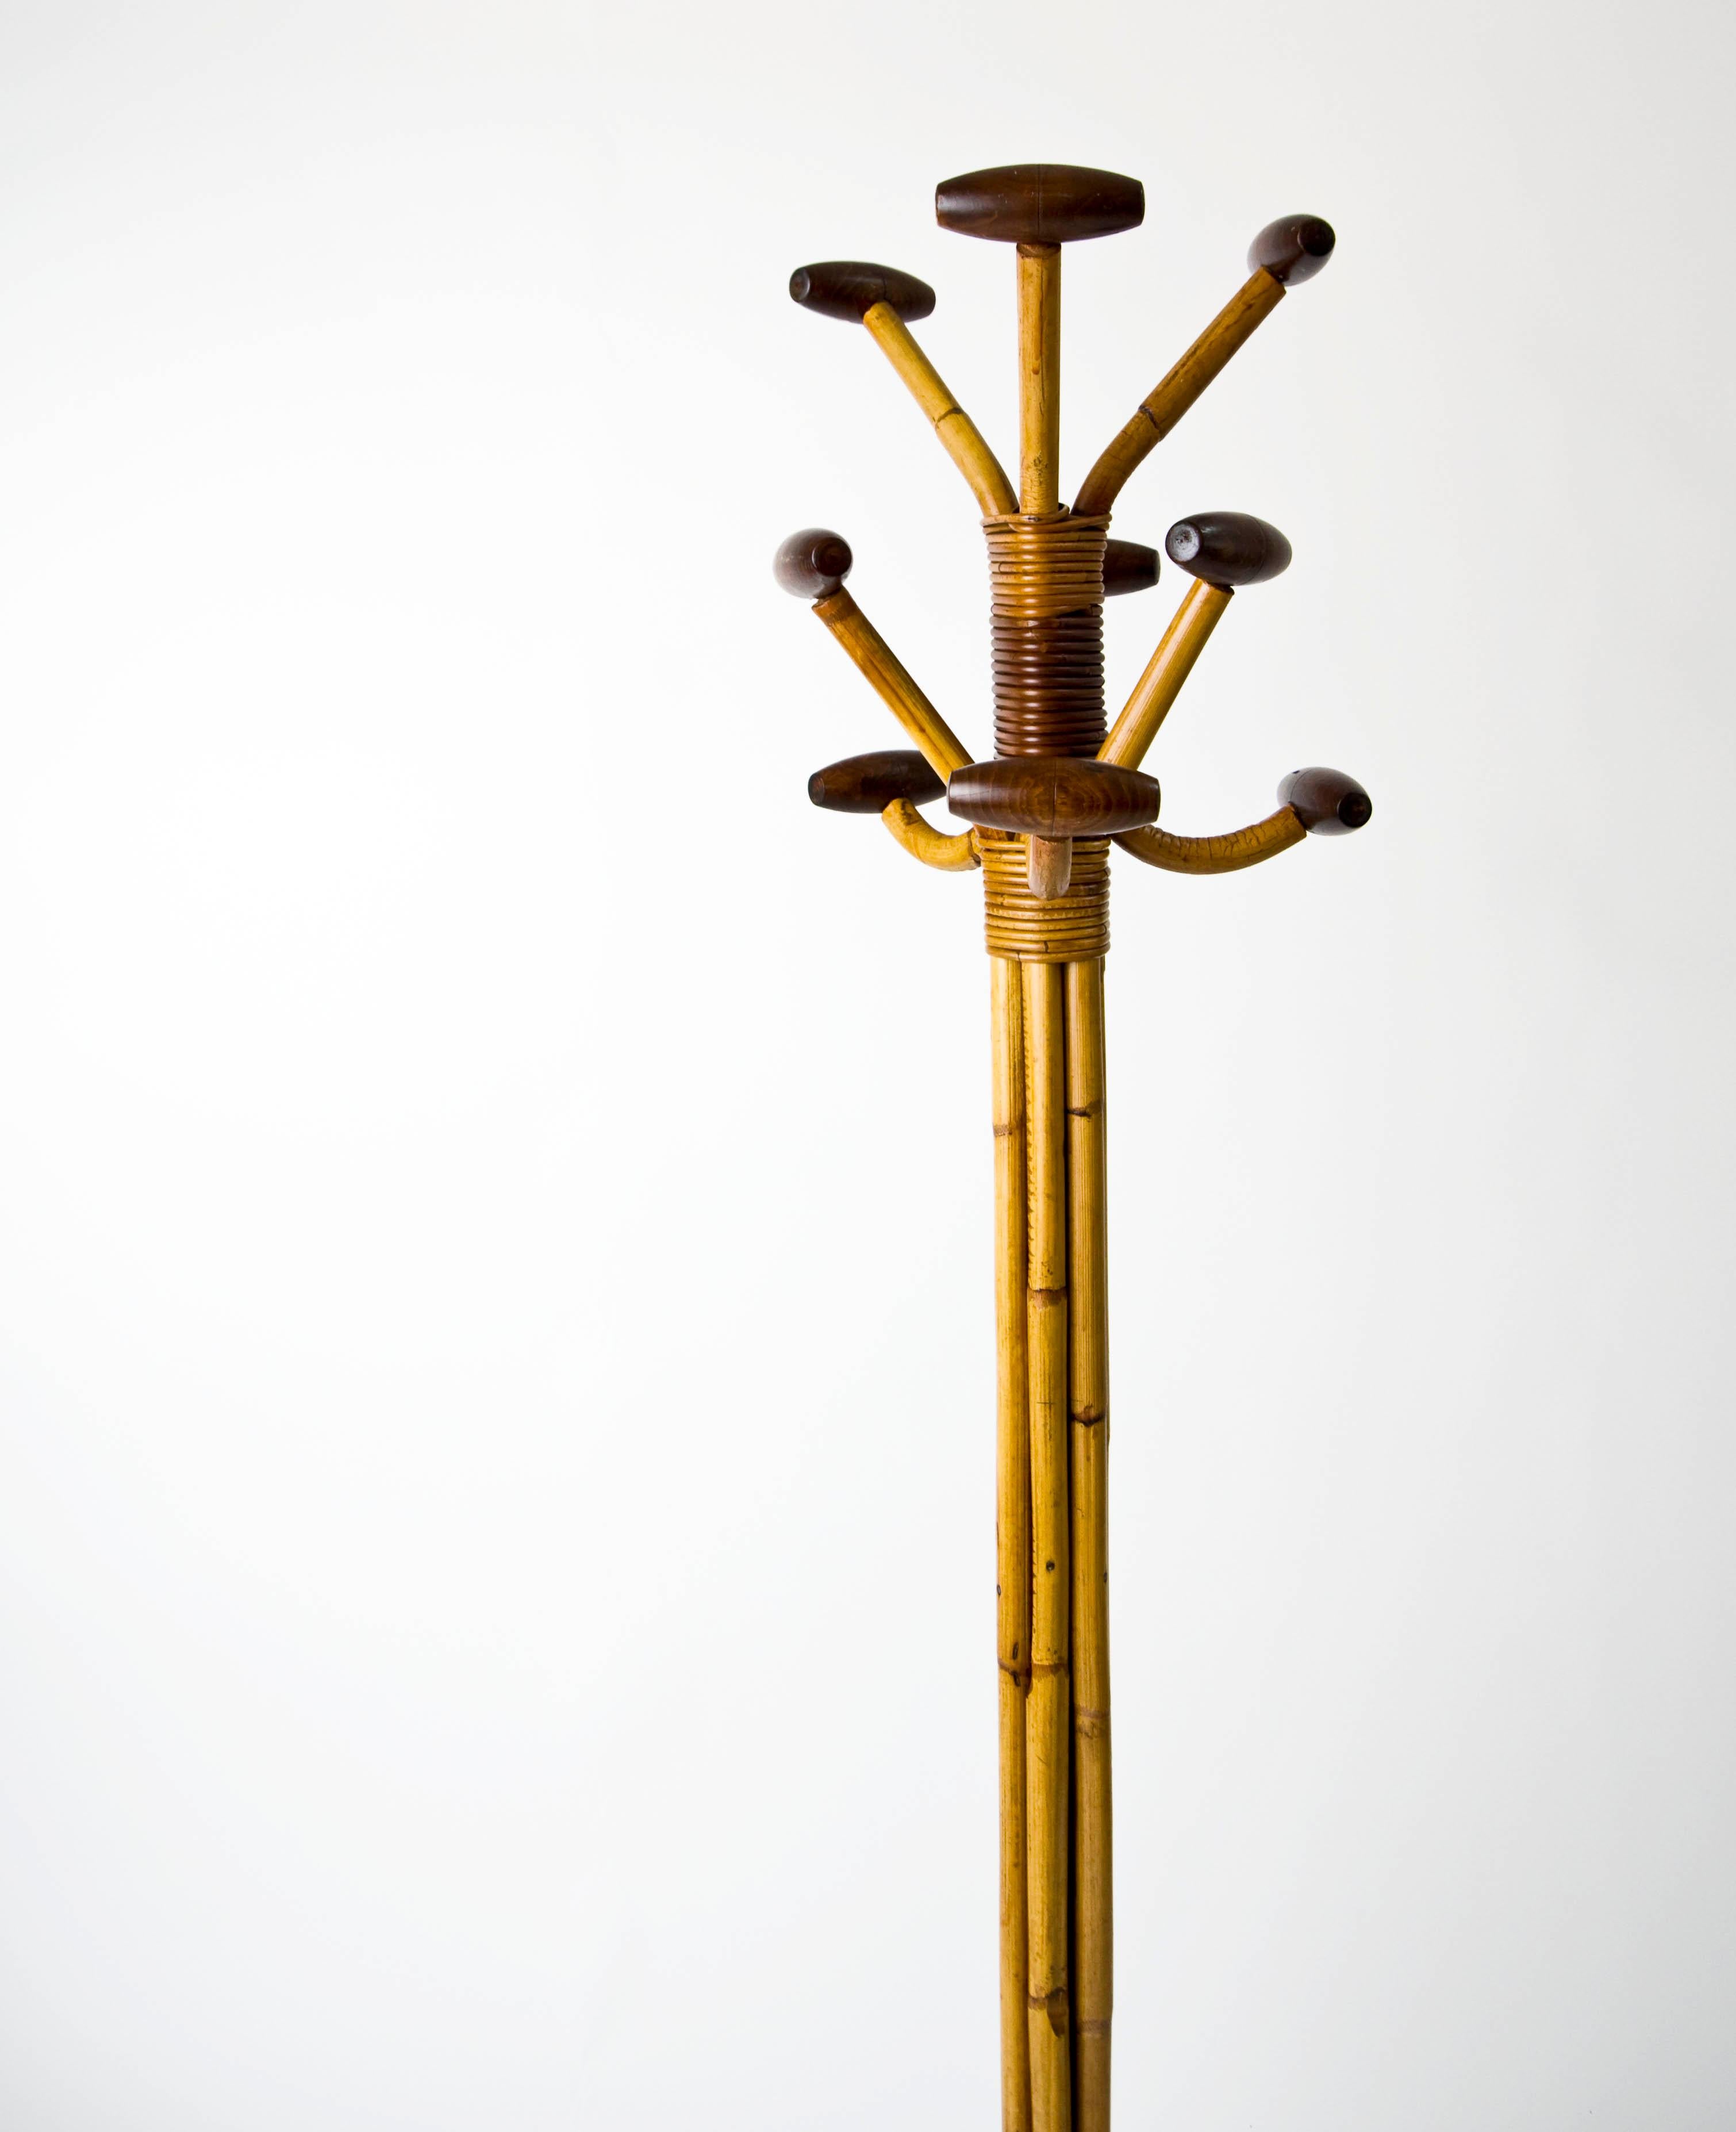 Olaf von Bohr für Vittorio Bonacina, Garderobenständer, Bambus 1950er Jahre. Dieser Garderobenständer aus Bambus zeichnet sich durch eine rhythmische Struktur aus gleichmäßig angeordneten Bambuslatten aus, die für visuelles Interesse sorgt. Schönes